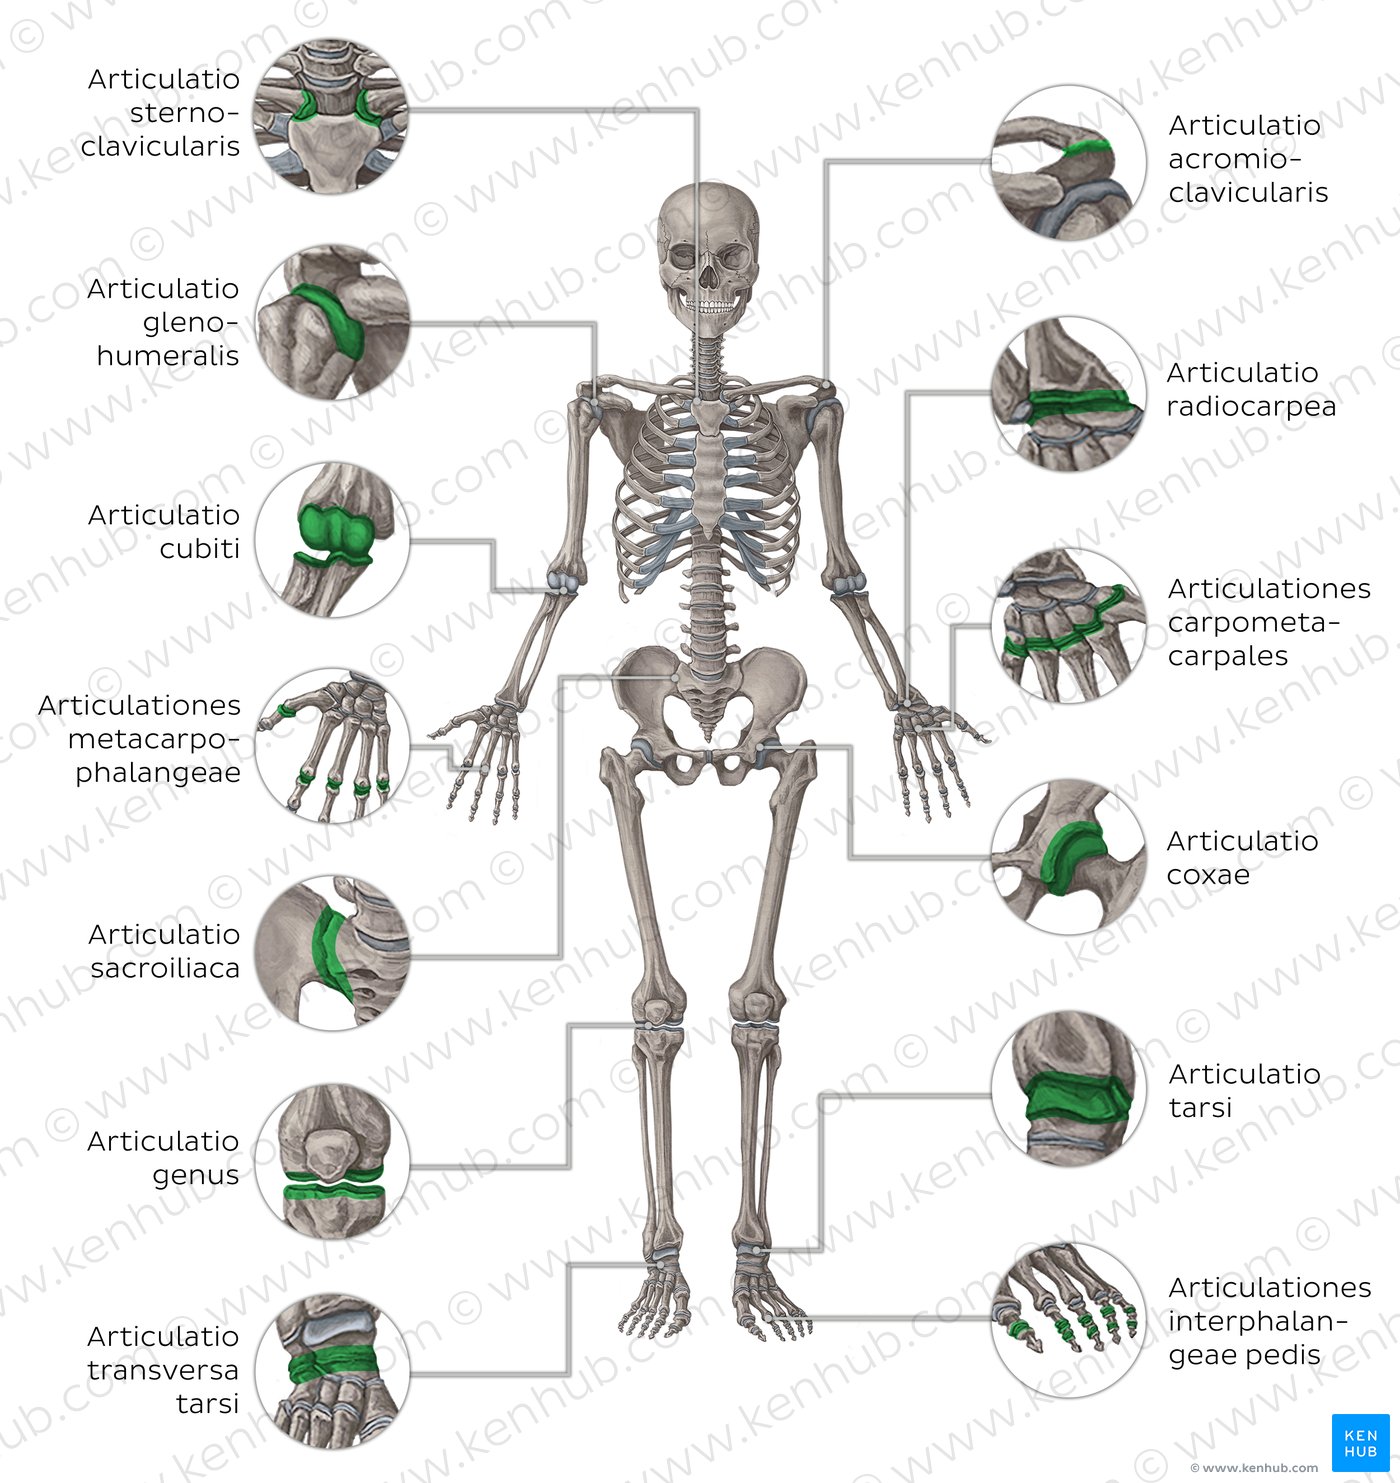 Wie viele Knochen hat ein Mensch?